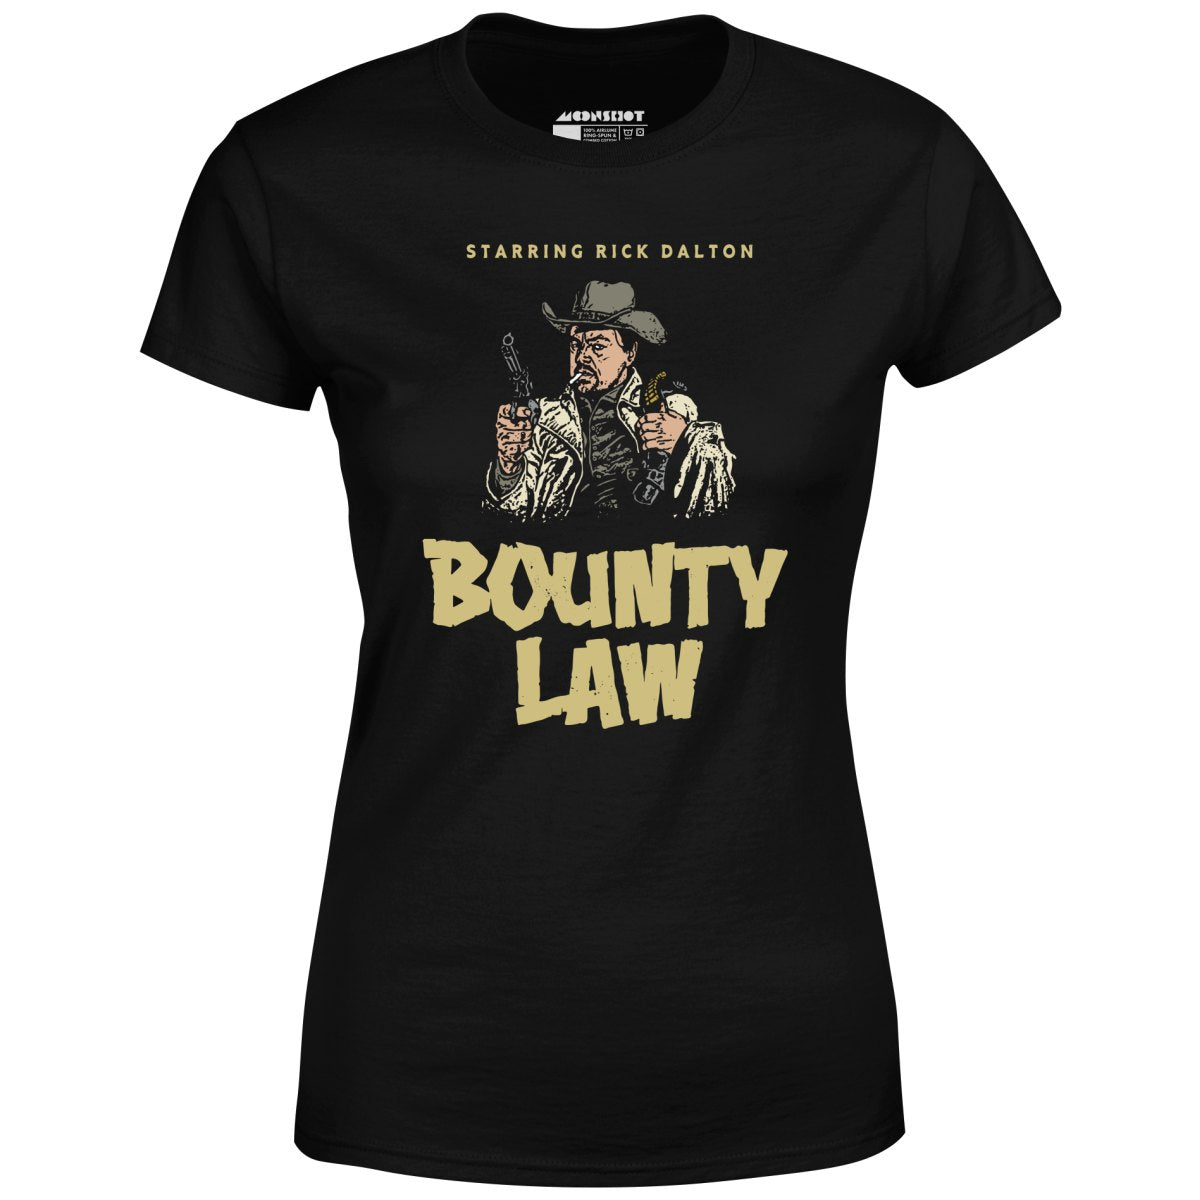 Rick Dalton - Bounty Law - Women's T-Shirt